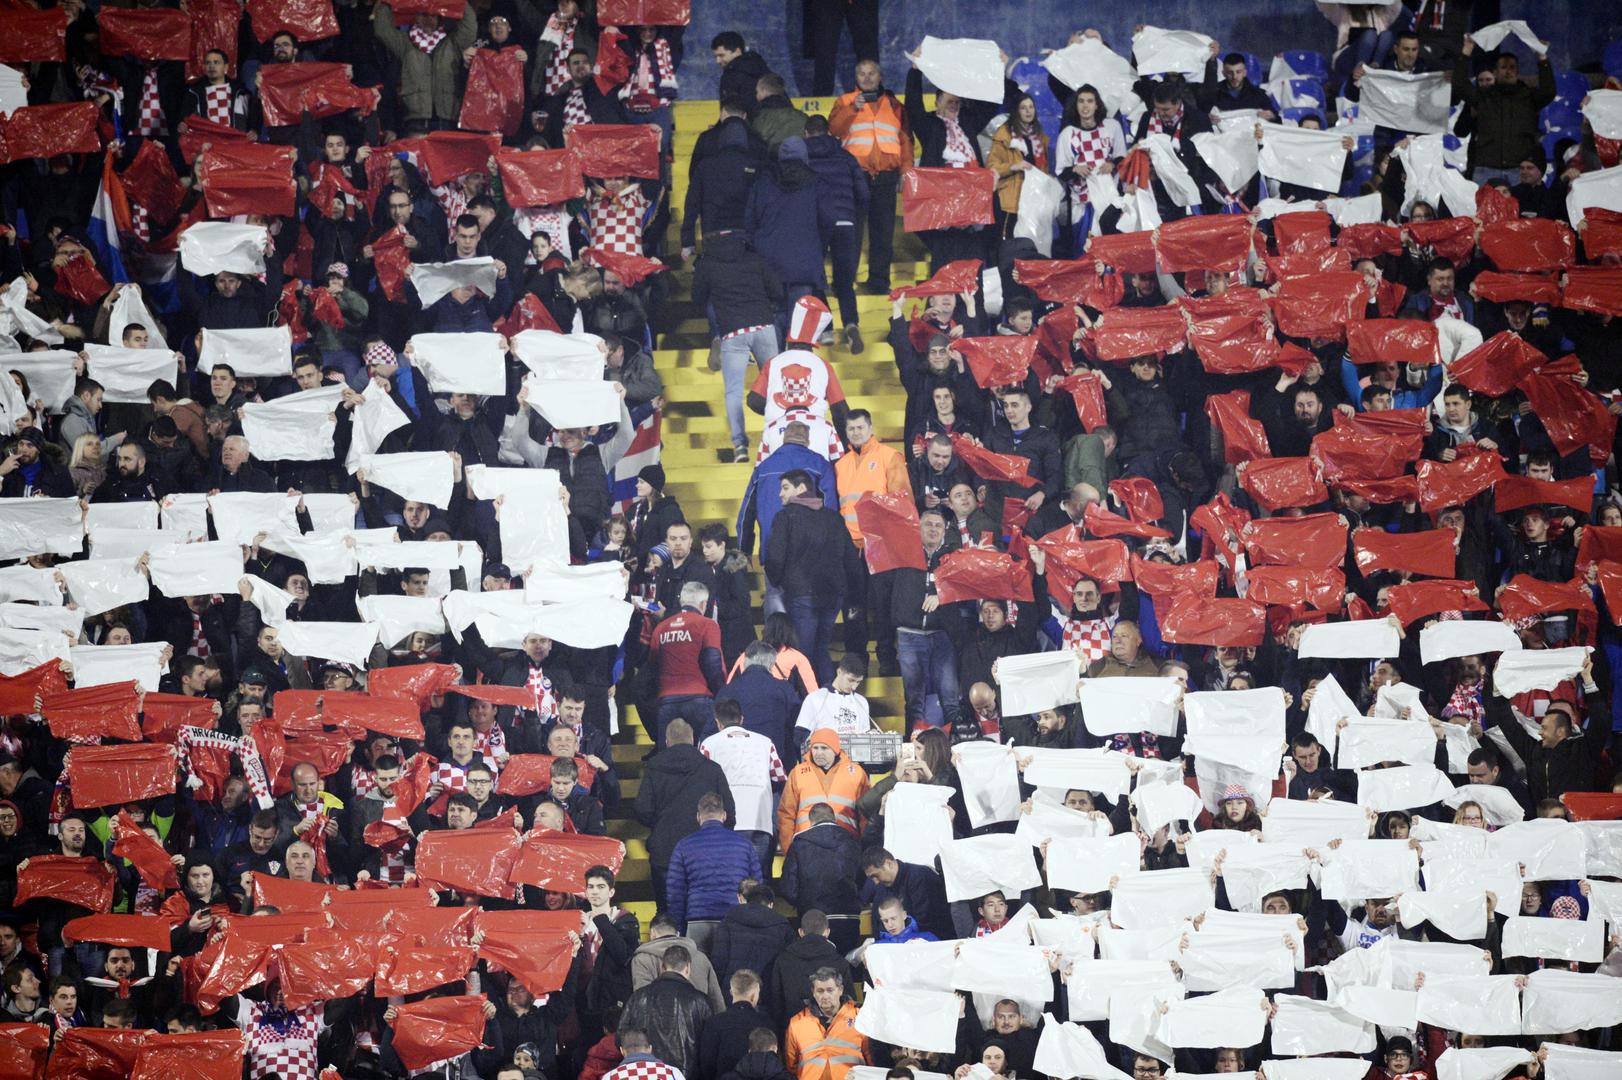 Istok Maksimira uoči utakmice izgledao je impresivno - navijači su podignuli crveno-bijele kvadratiće i tako obojali tribinu.